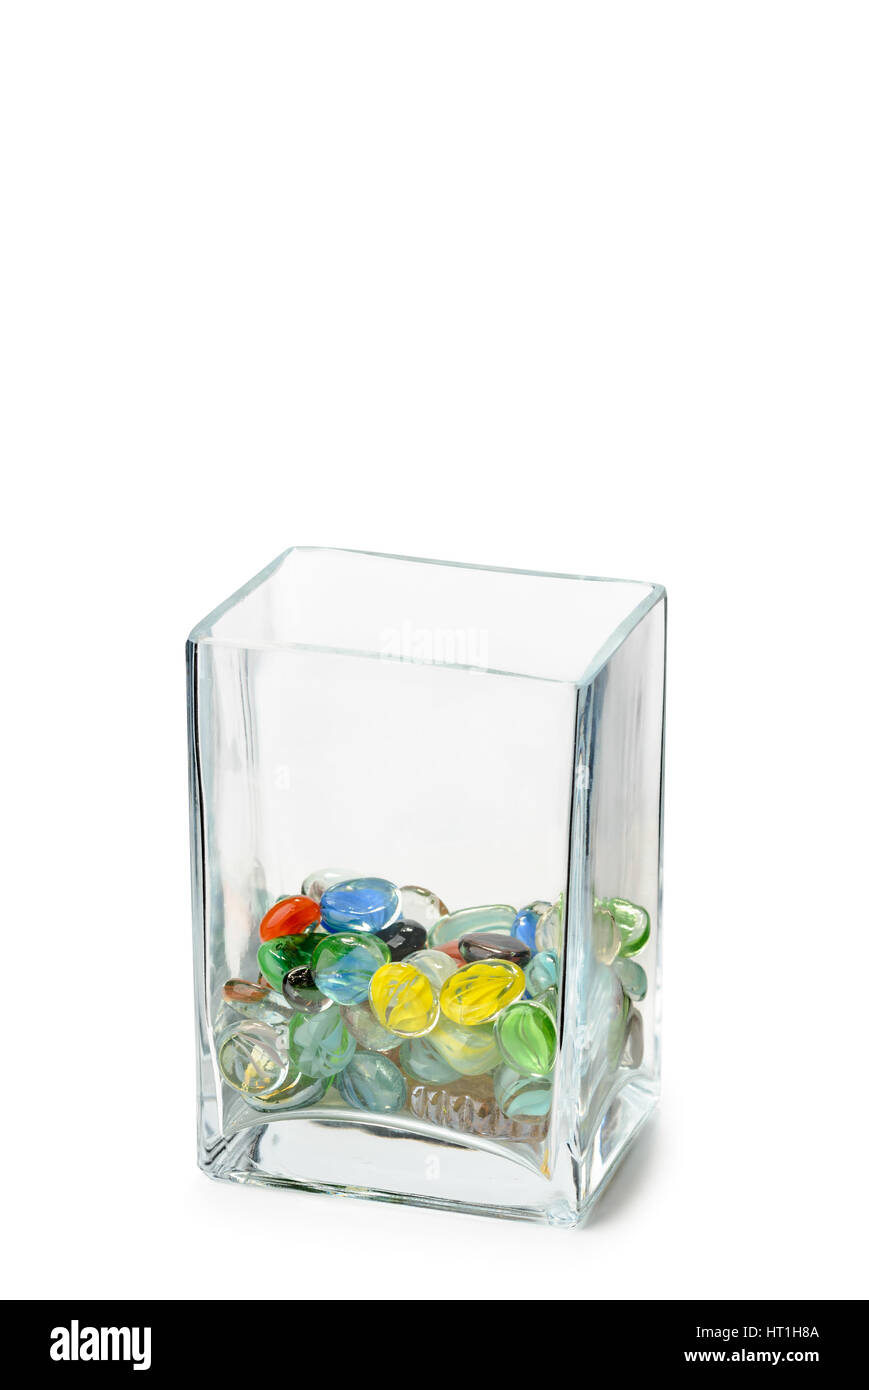 Une forme parallélépipédique transparente crystal vase isolé sur fond blanc, à moitié plein de perles de verre de couleur Banque D'Images